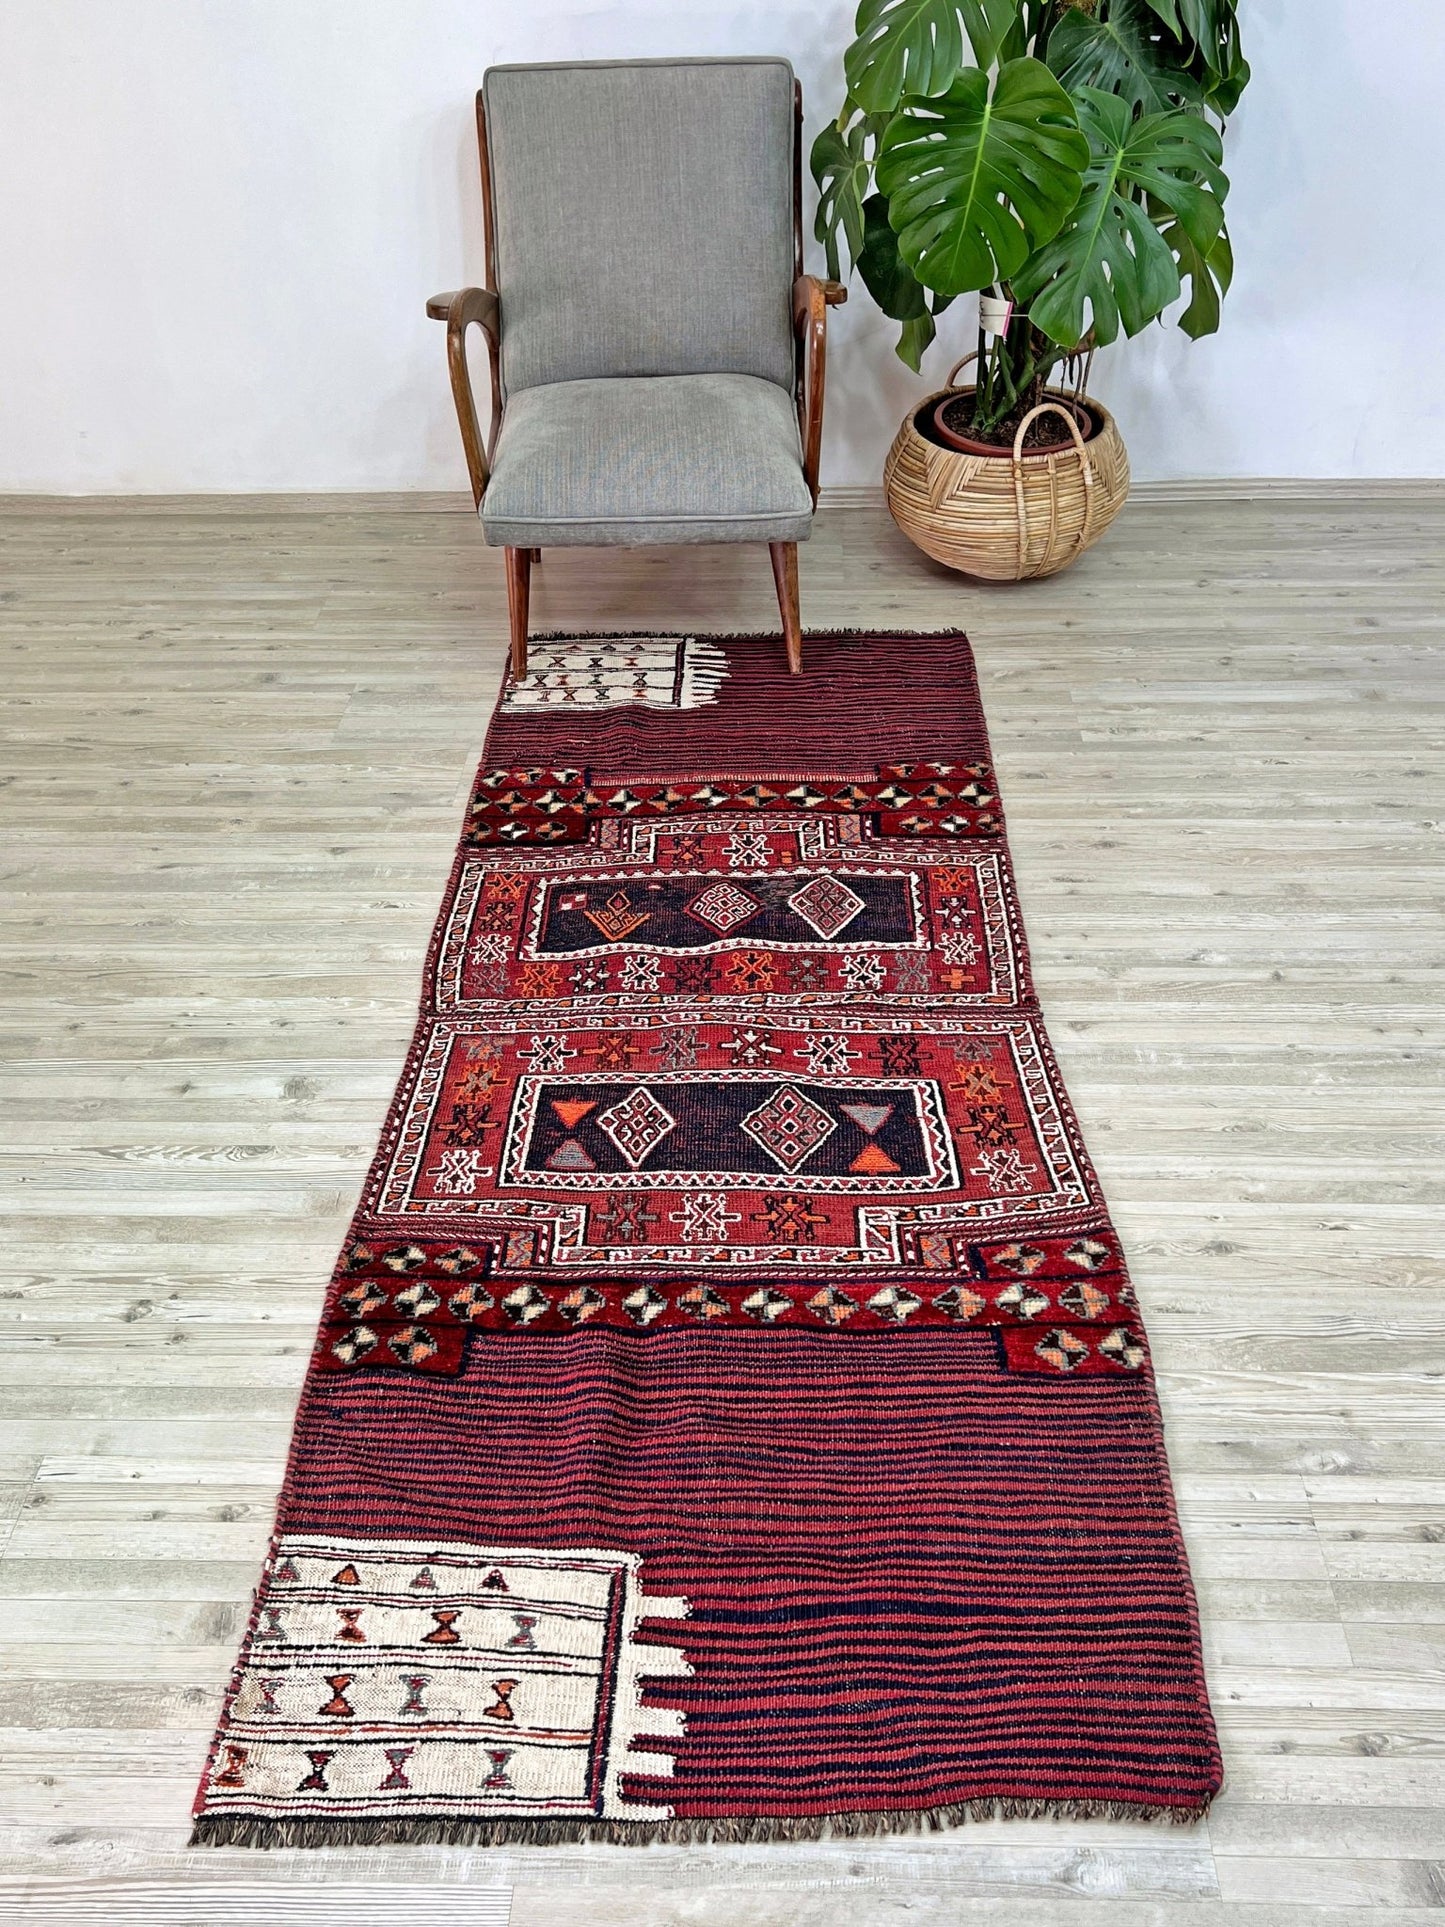 bakhtiari saddle bag oriental rug shop palo alto persian rug san francisco bay area buy vintage rug online berkeley CA